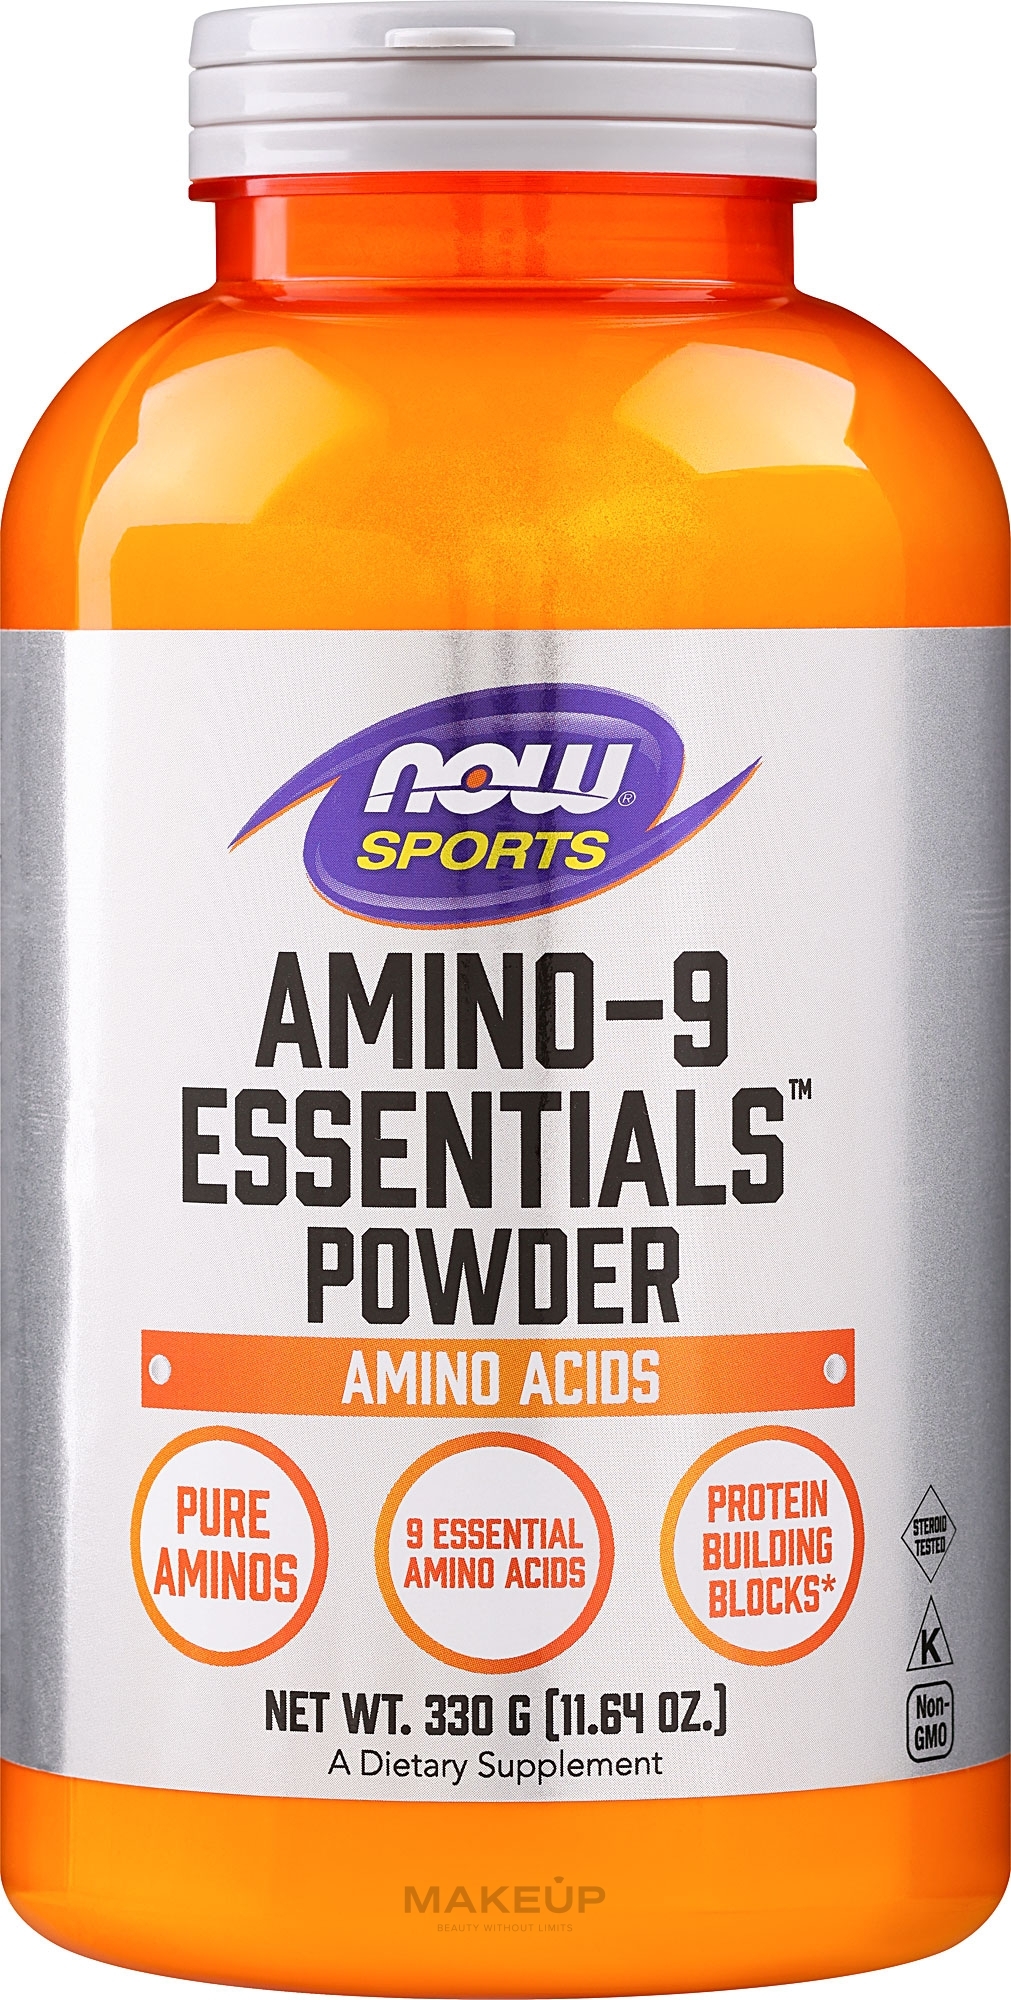 Пищевая добавка в порошке для спортсменов "Аминокислота" - Now Foods Amino-9 Essentials Sports — фото 330g